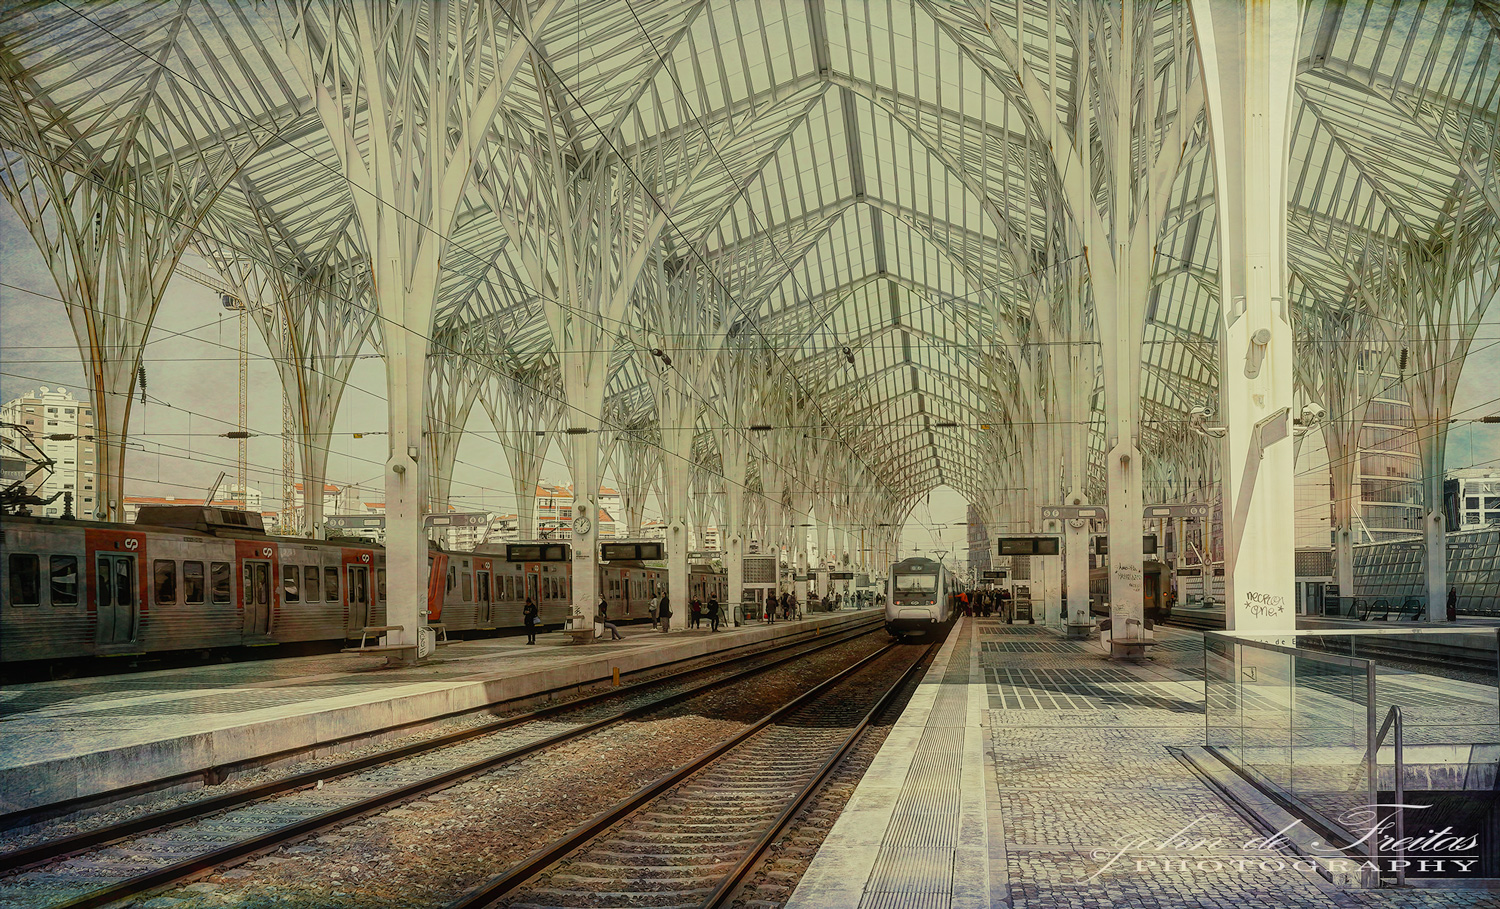 2019 - Oriente Train Station - Parque das Nações, Lisbon - Portugal